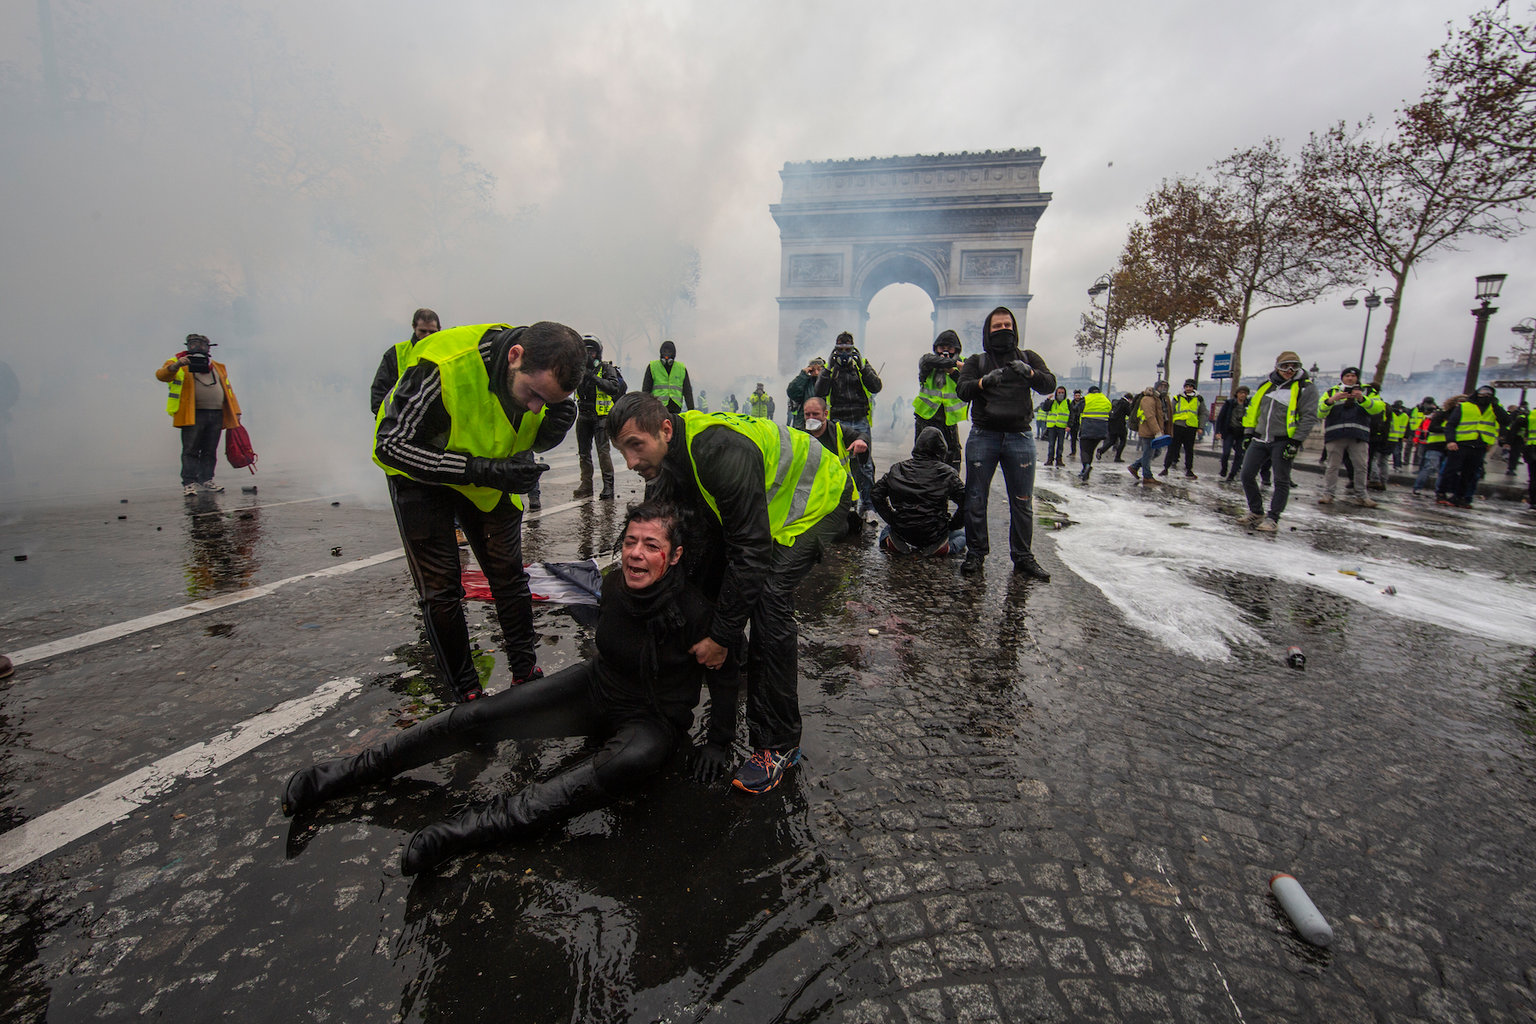 Una mujer yace herida en el suelo tras el impacto de un cañón de agua en los enfrentamientos con la policía parisina (GettyImages)